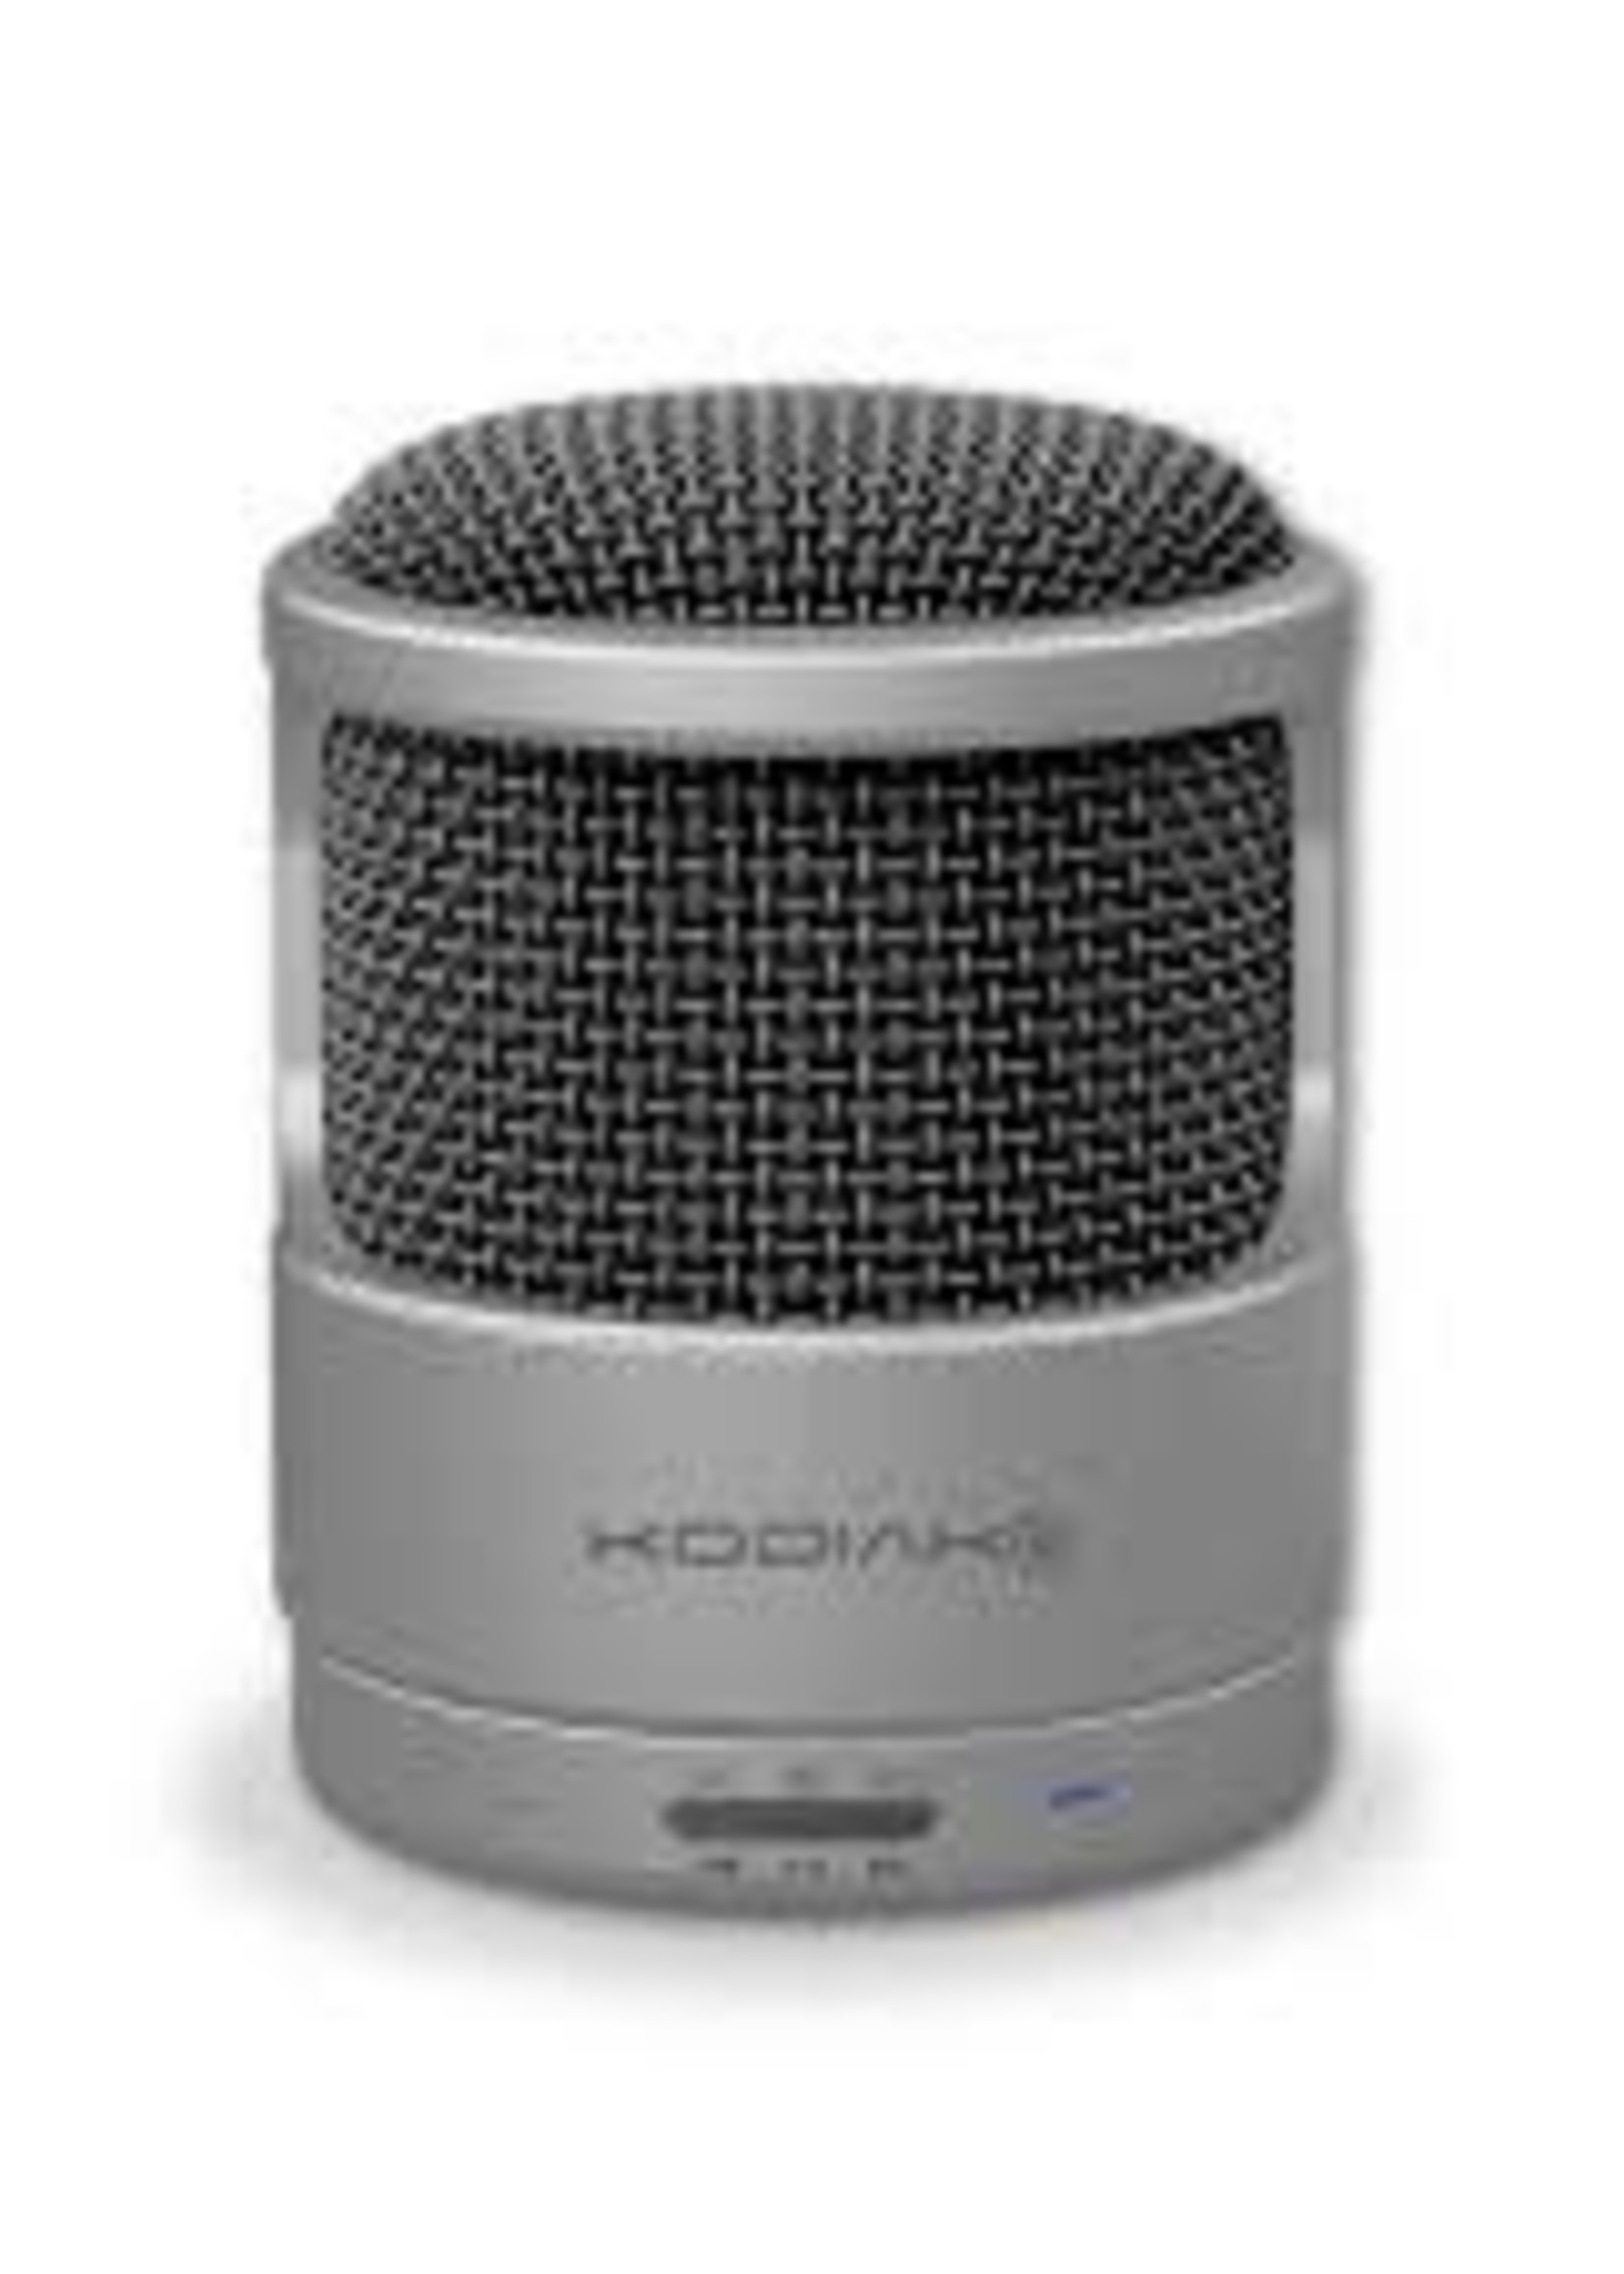 KODIAK Kodiak Bluetooth Speaker5W Mic-Pro Aluminum Silver